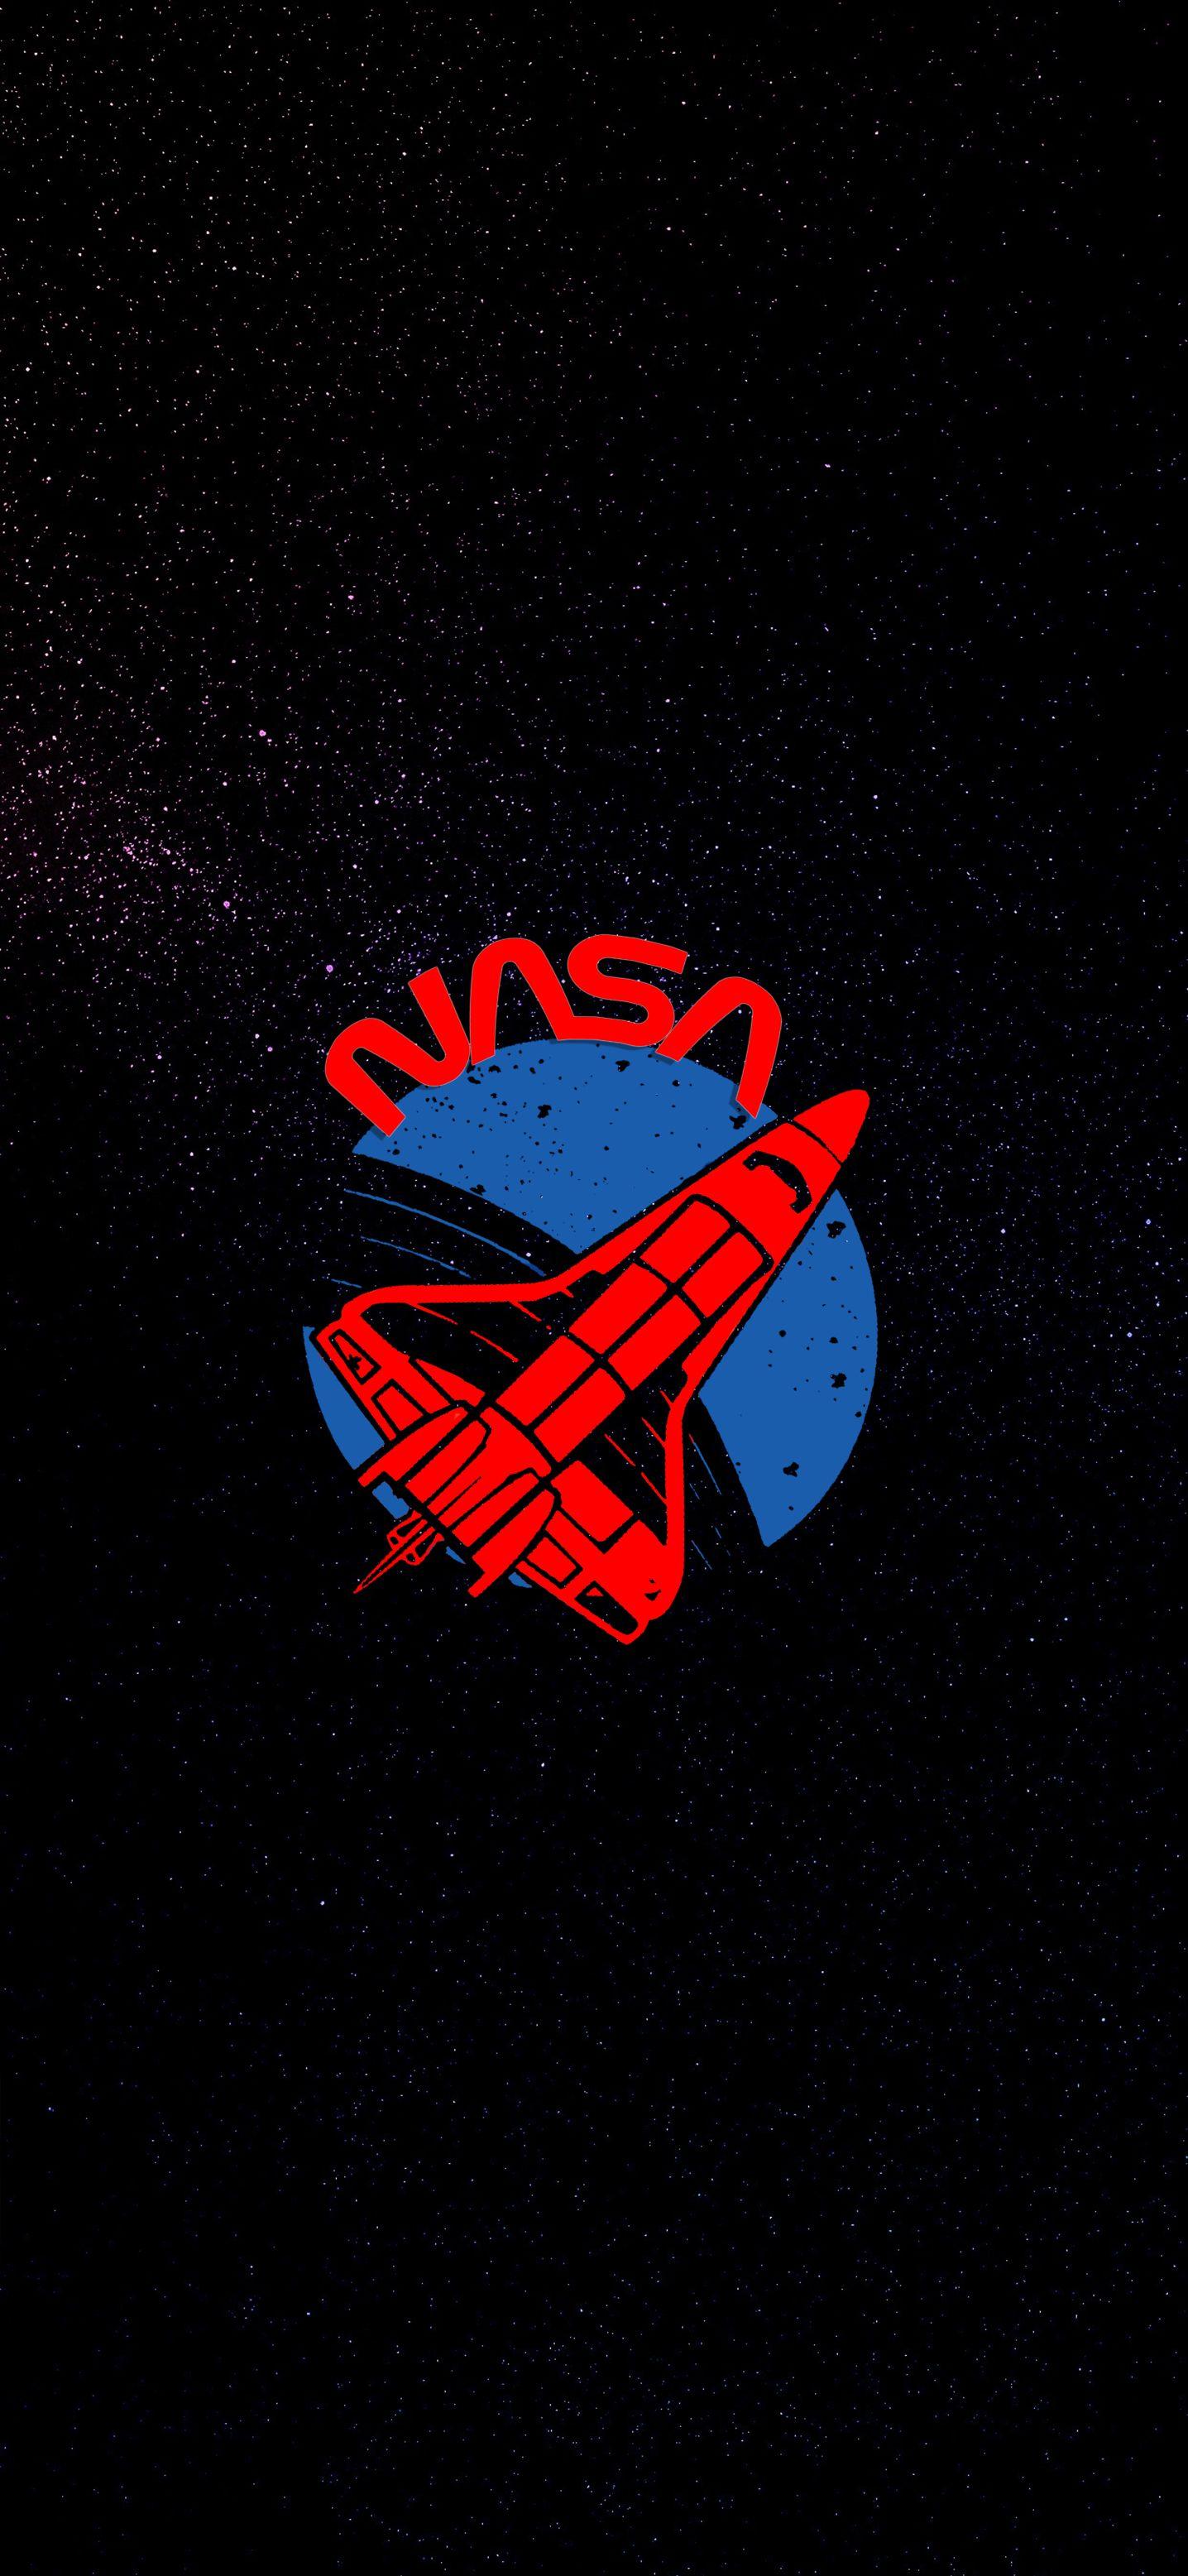 Bay vào vũ trụ với loạt hình nền đẹp về NASA cho MacBook